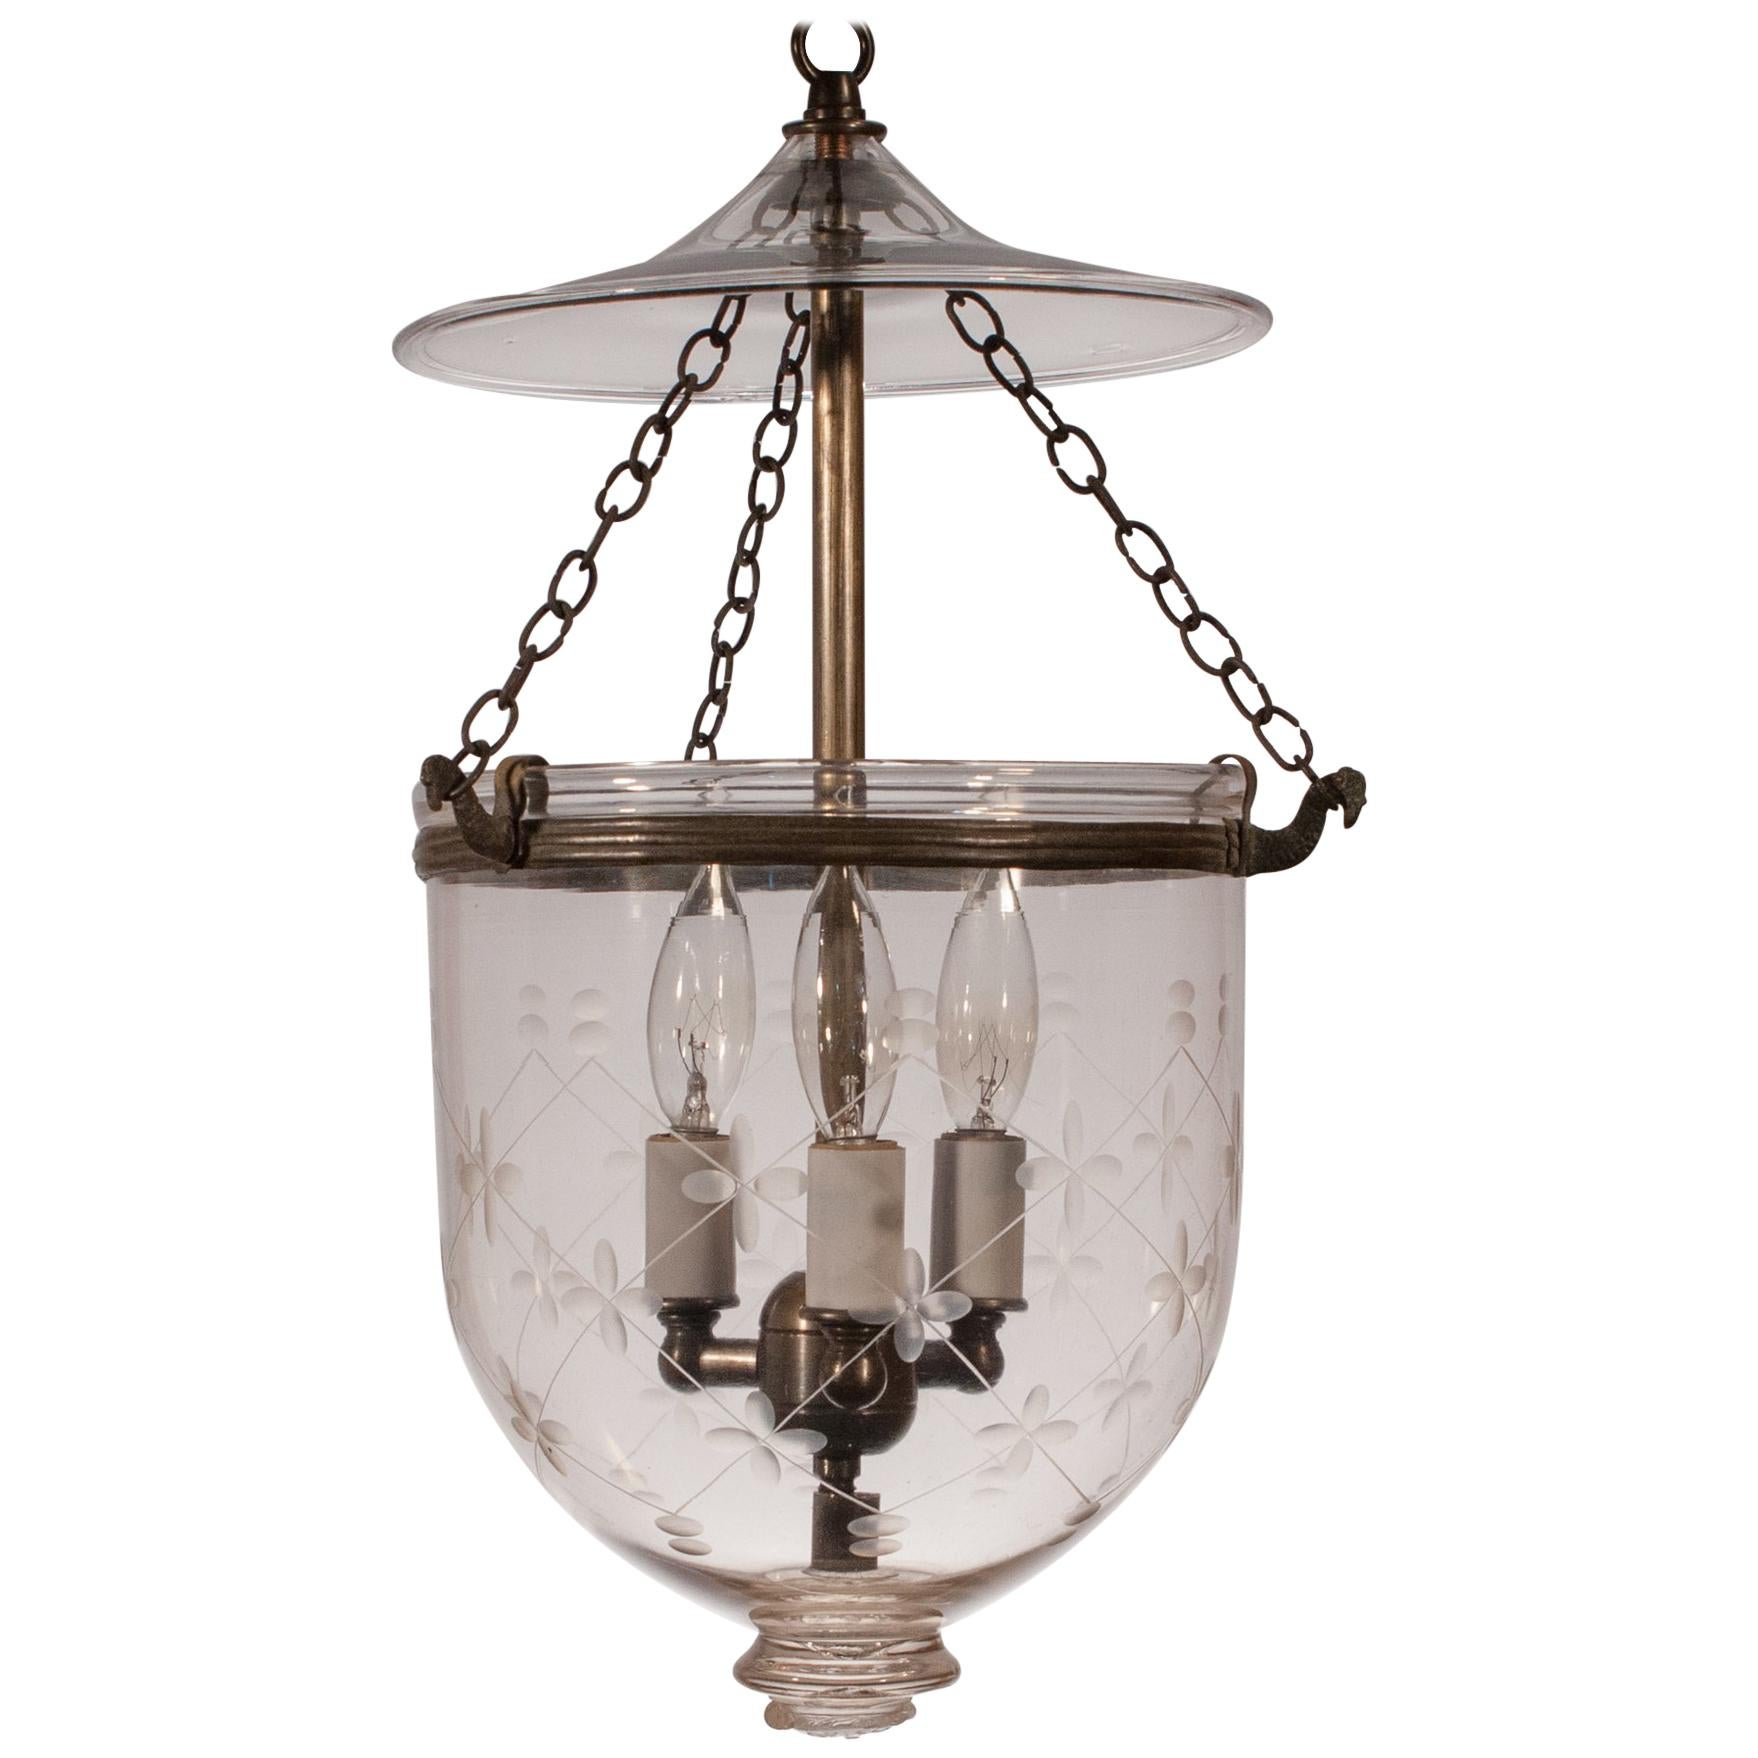  Petite Bell Jar Lantern with Etching